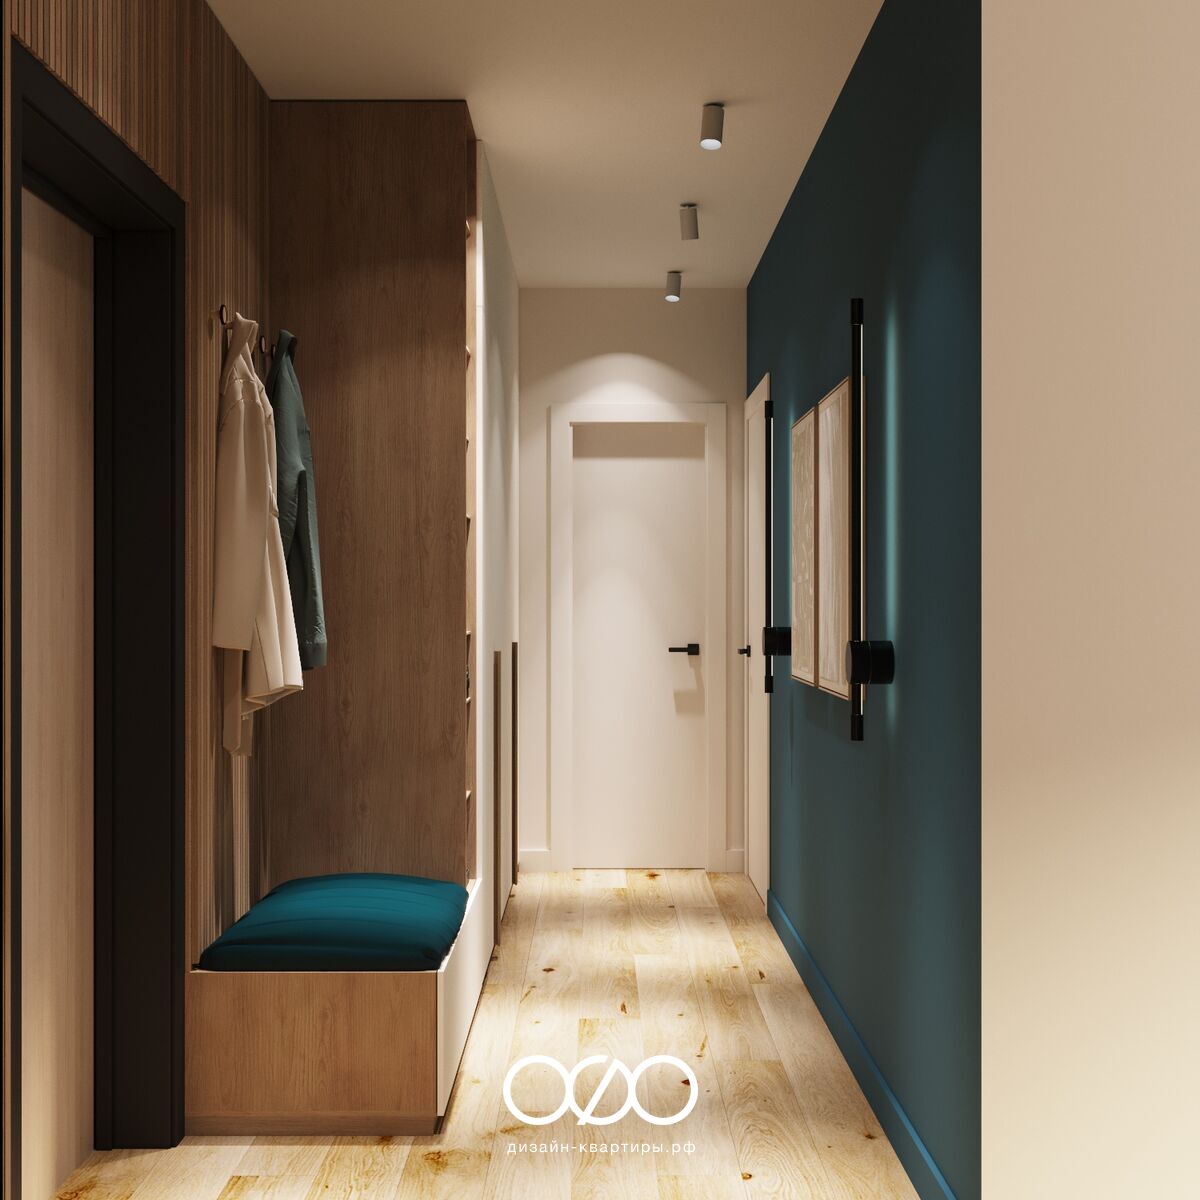 Дизайн-проект 2-комнатной квартиры 70 м2 в стиле бохо. Подмосковье, г. Зеленоград.